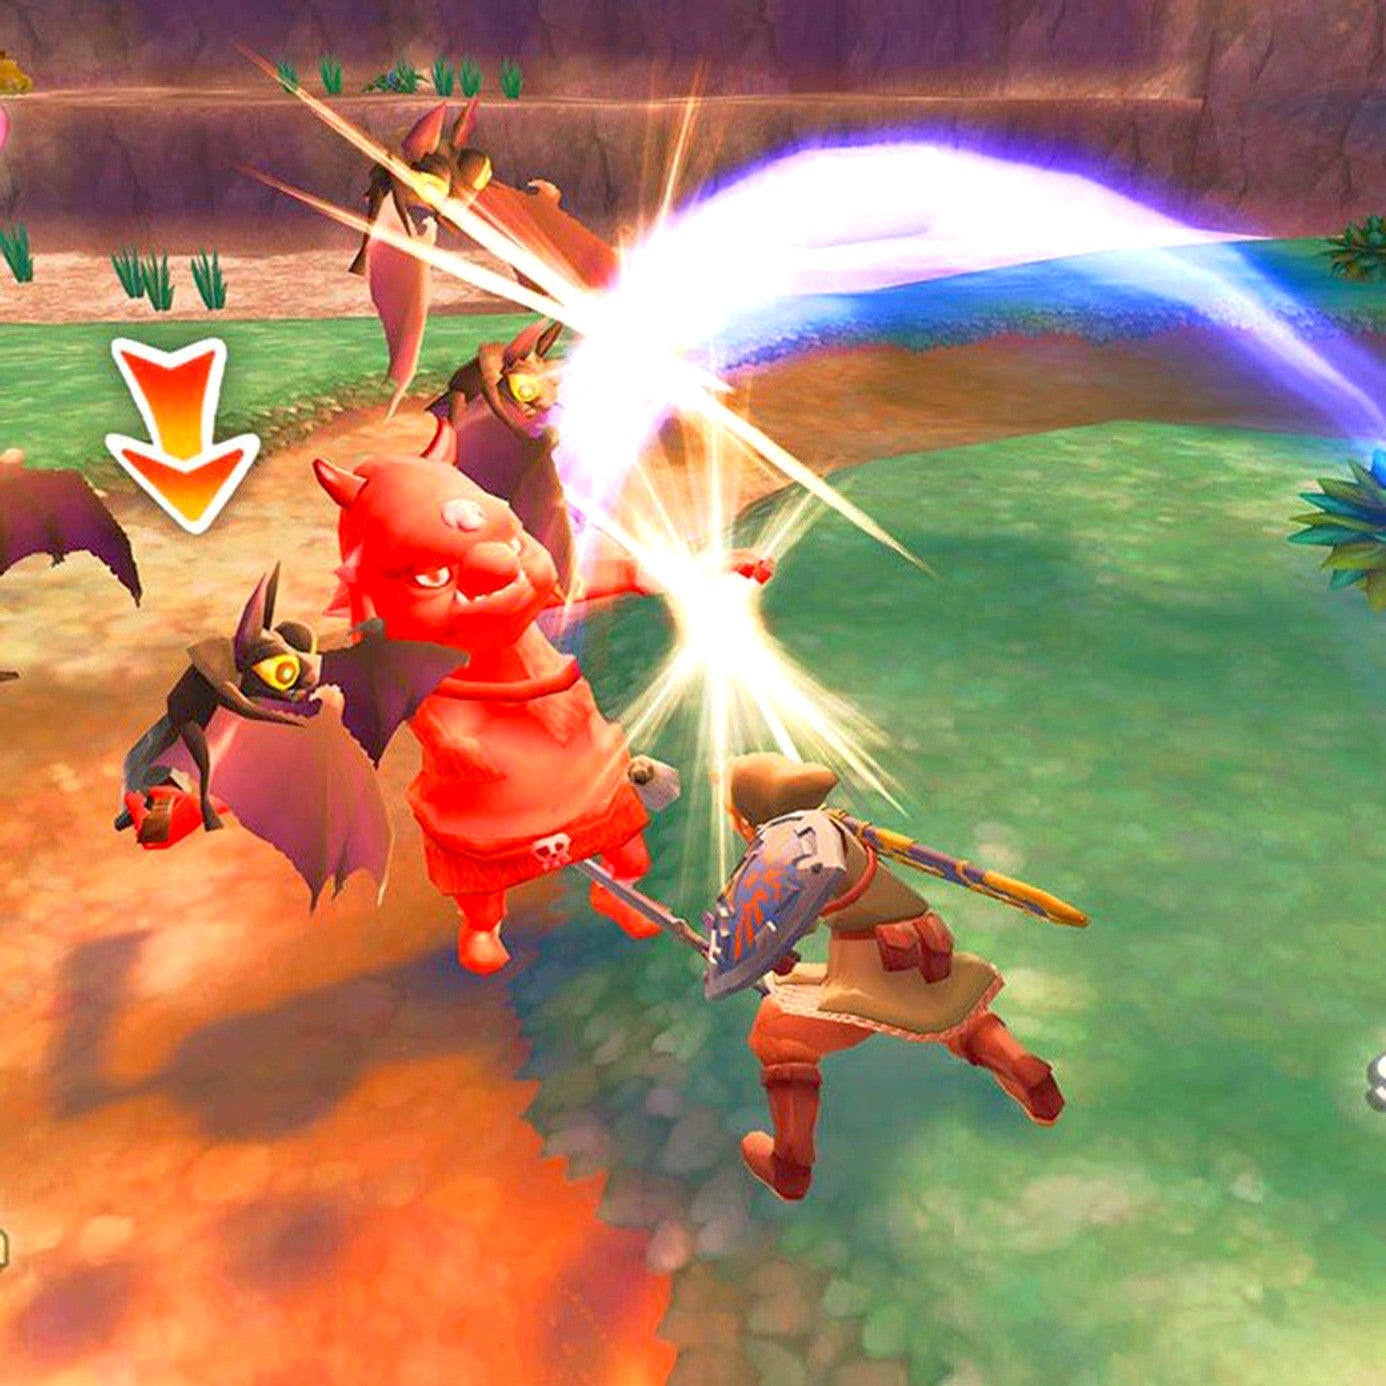 The Legend of Zelda: Skyward Sword Nintendo Wii Game - Screenshot